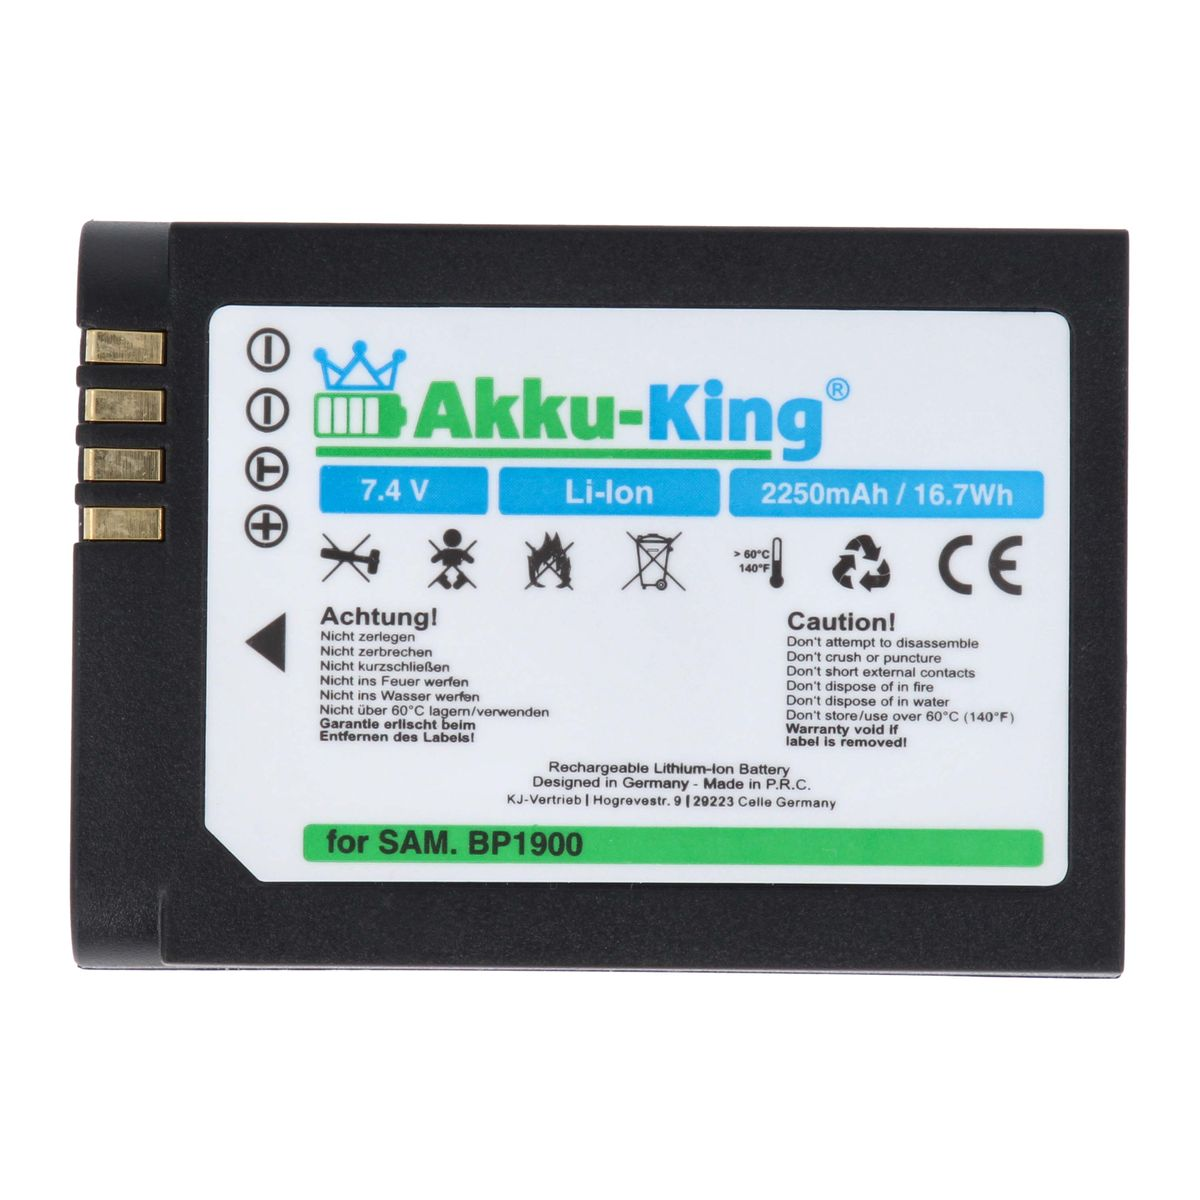 AKKU-KING Akku kompatibel Kamera-Akku, 7.4 BP-1900 Volt, 2250mAh Samsung mit Li-Ion